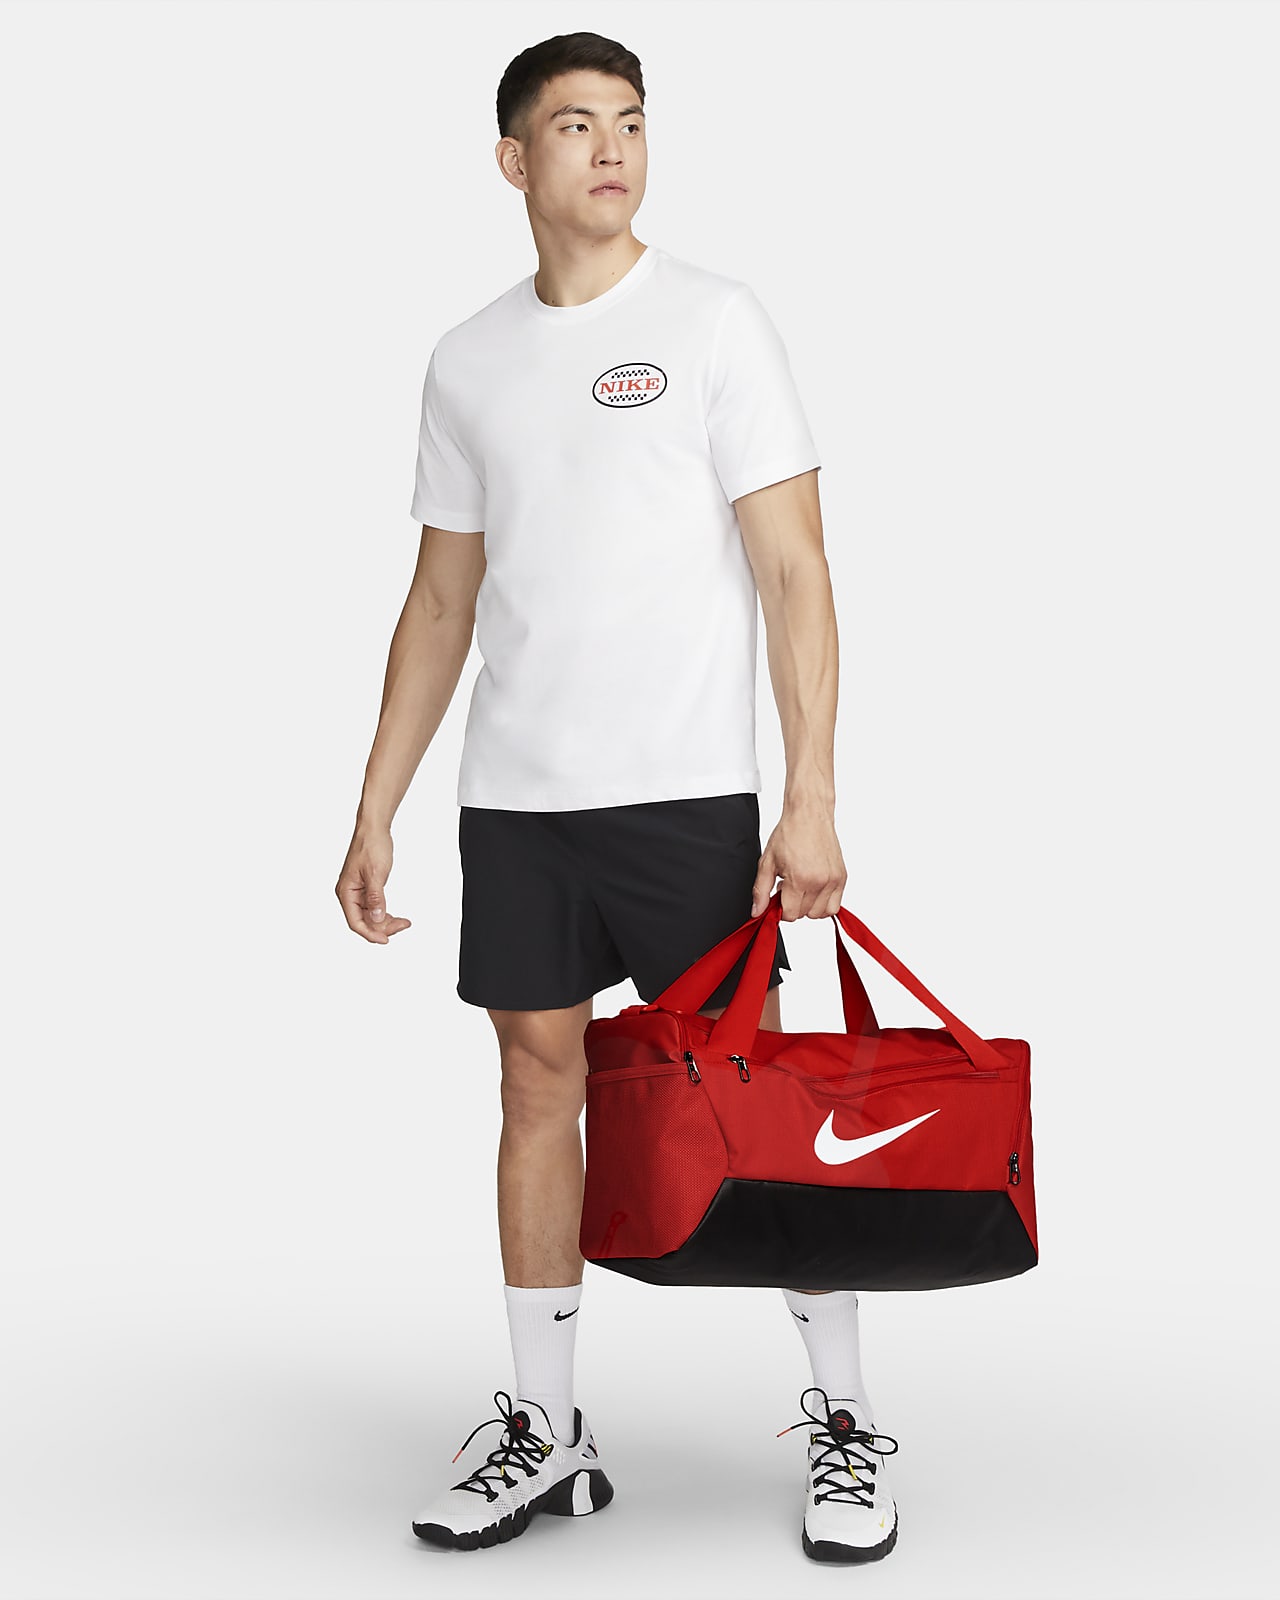 Nike Brasilia Duffel Bag - Red